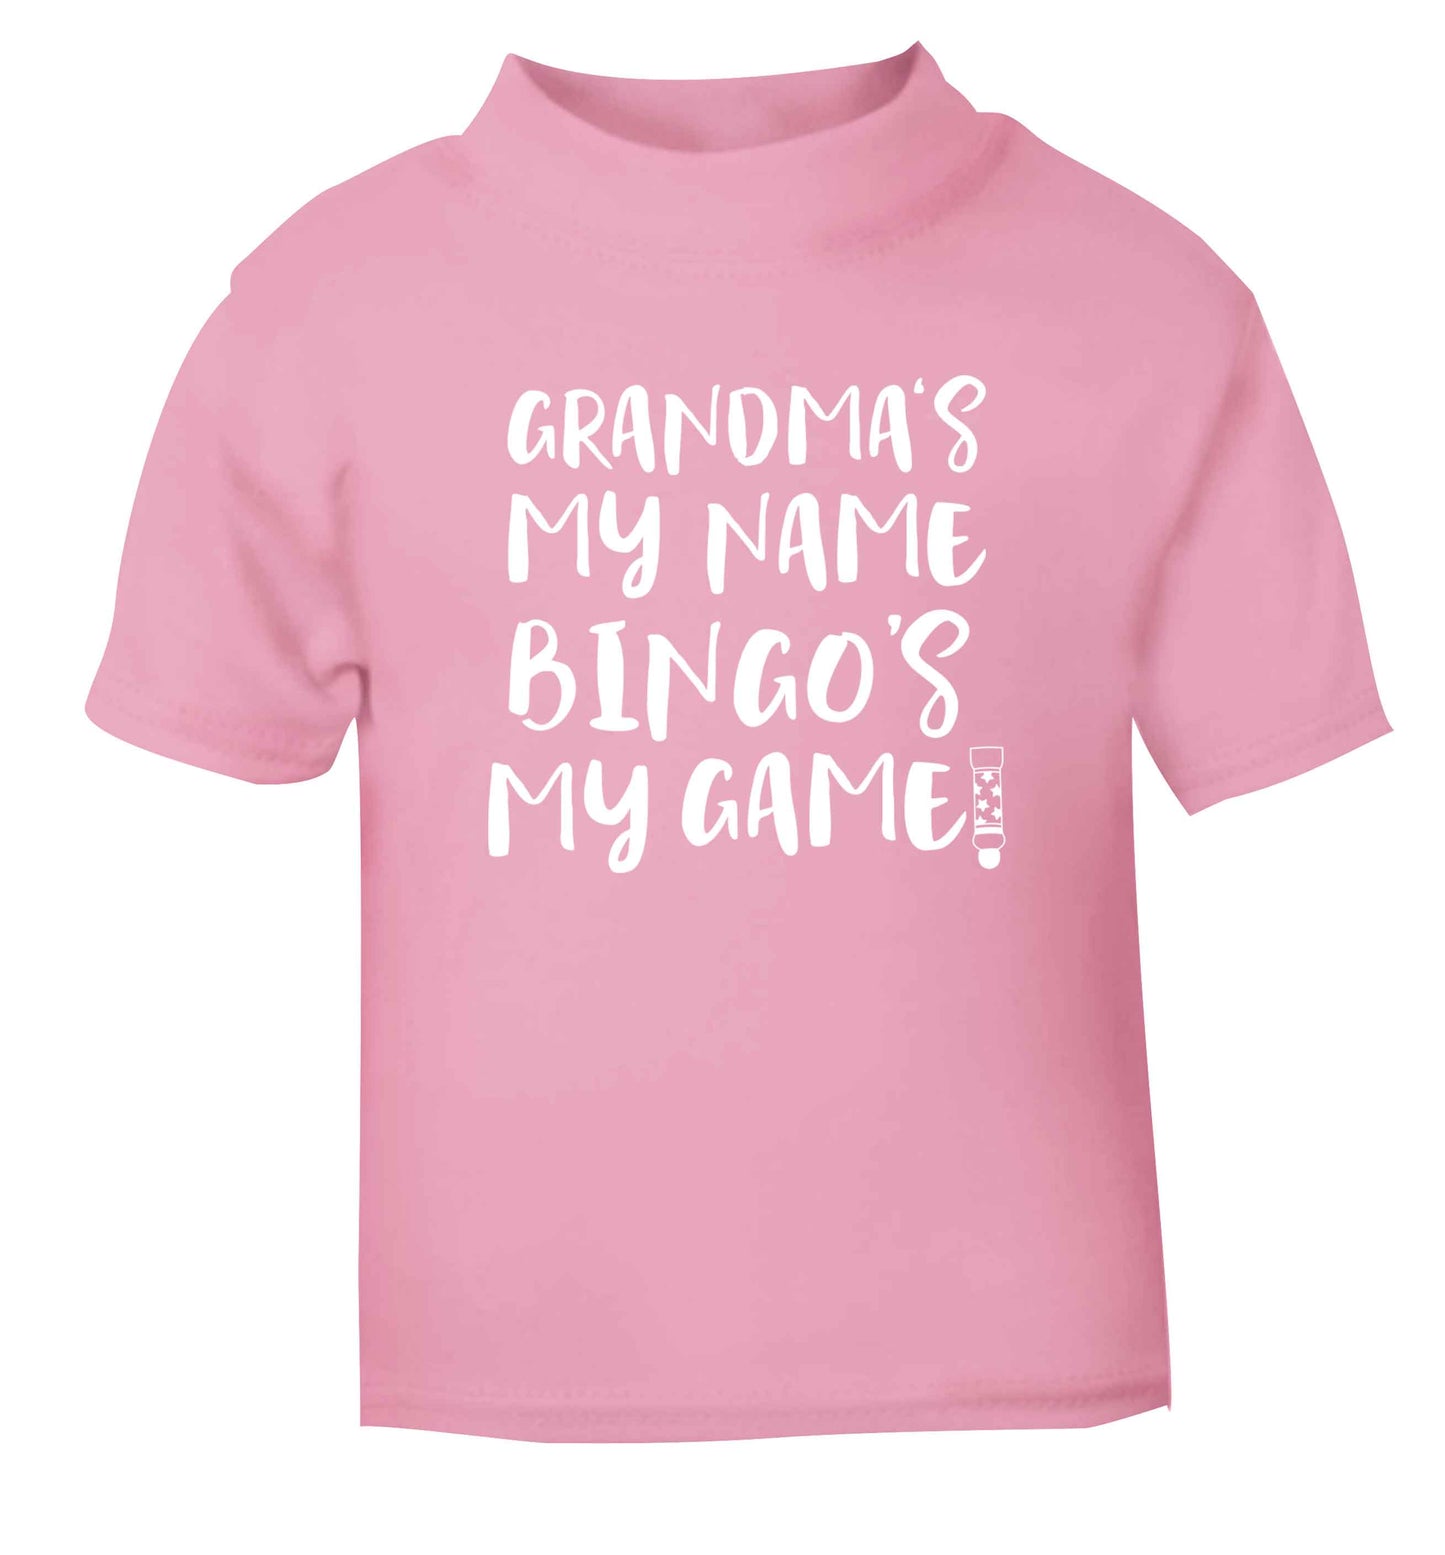 Grandma's my name bingo's my game! light pink Baby Toddler Tshirt 2 Years